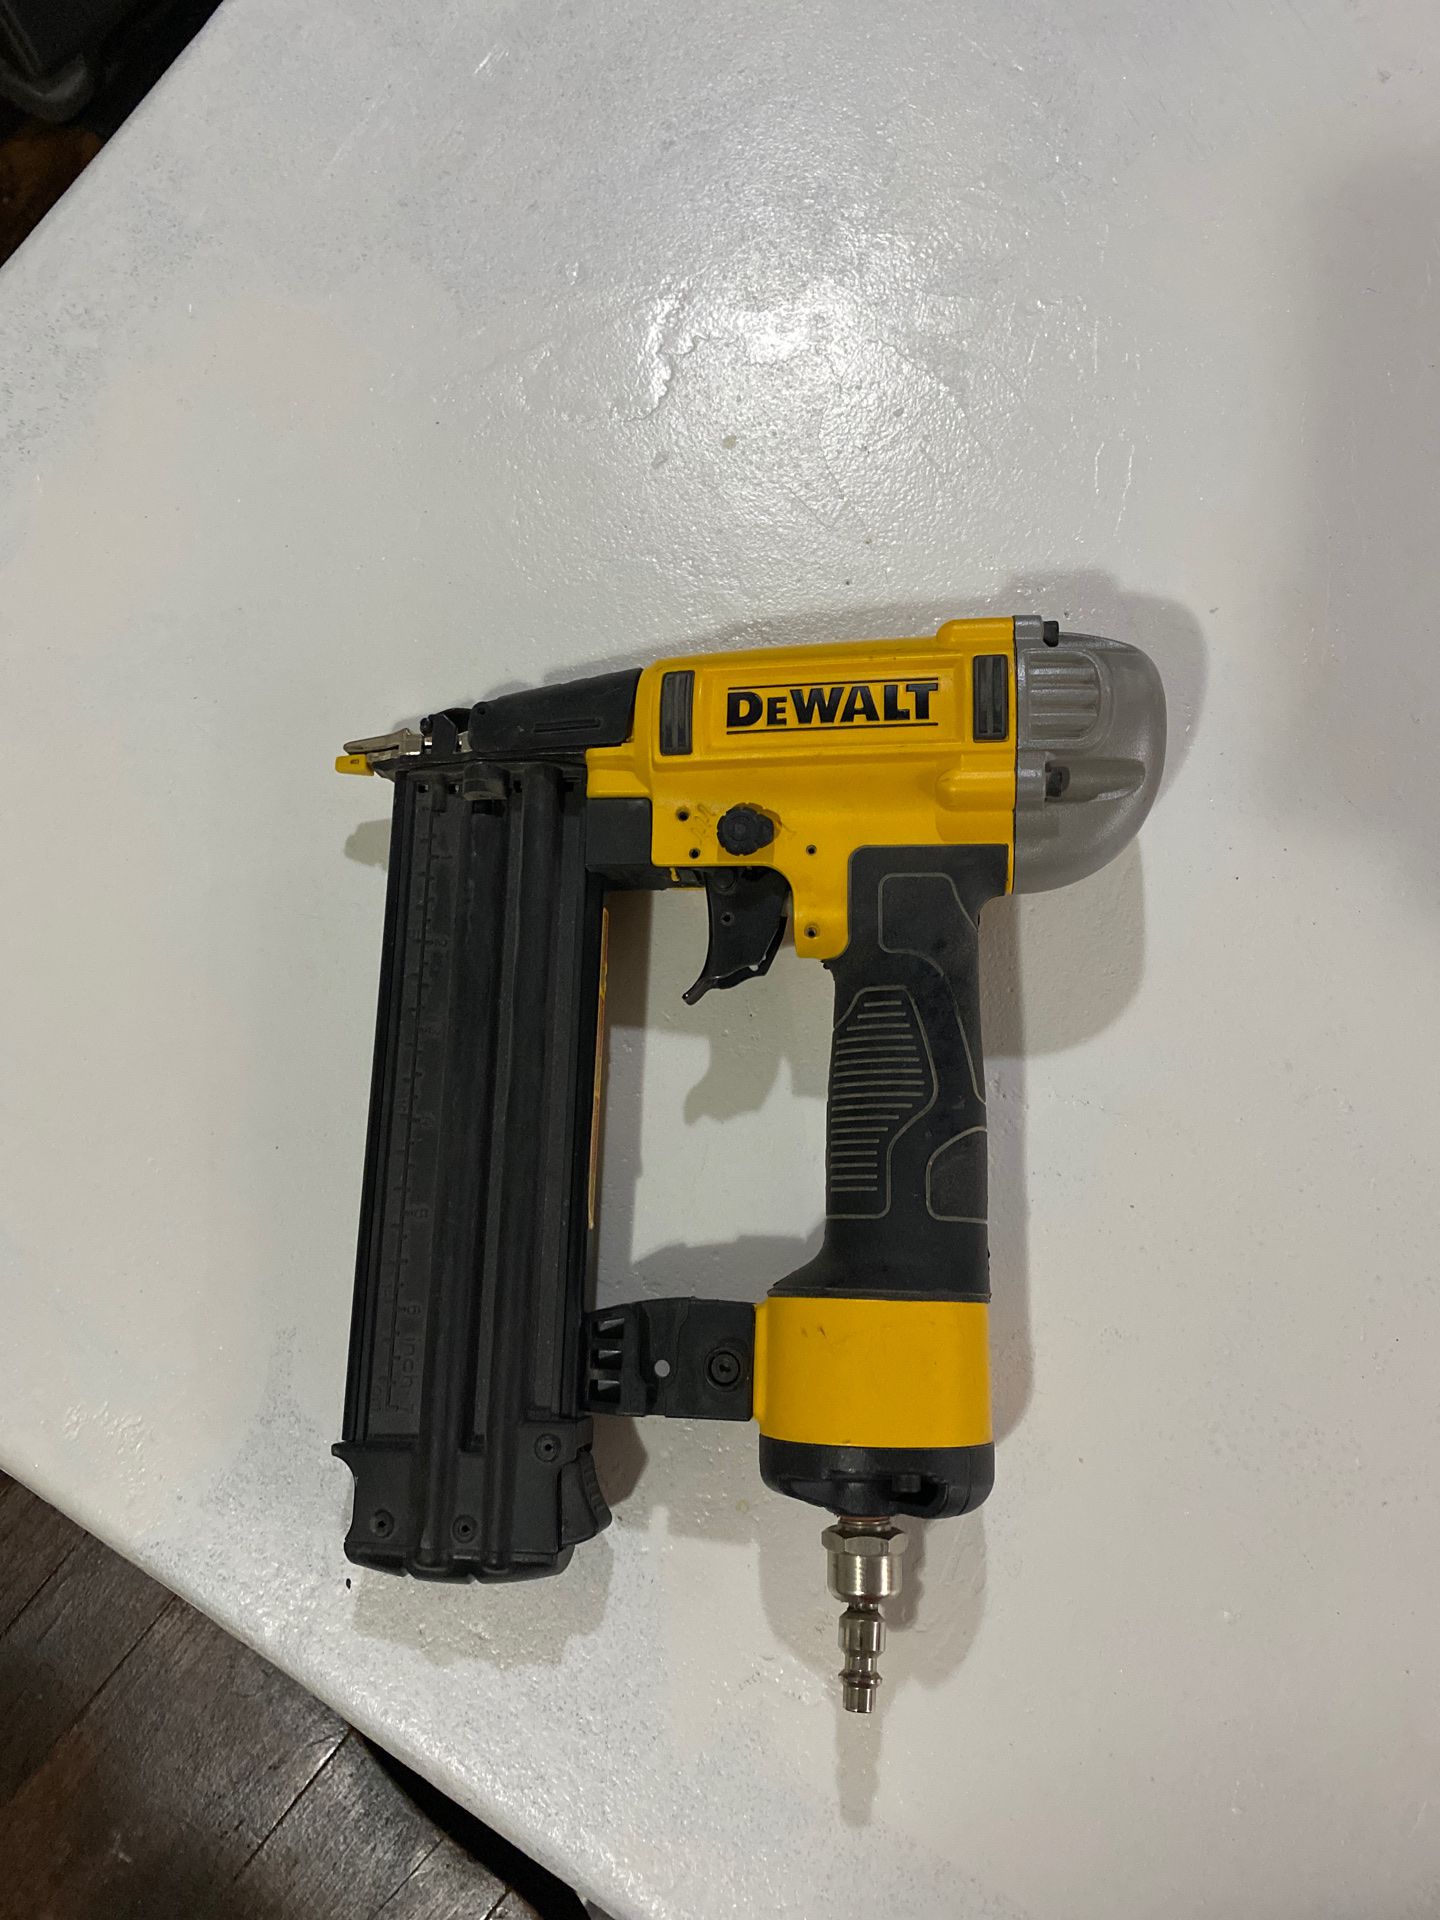 DeWalt 18 gauge nail gun